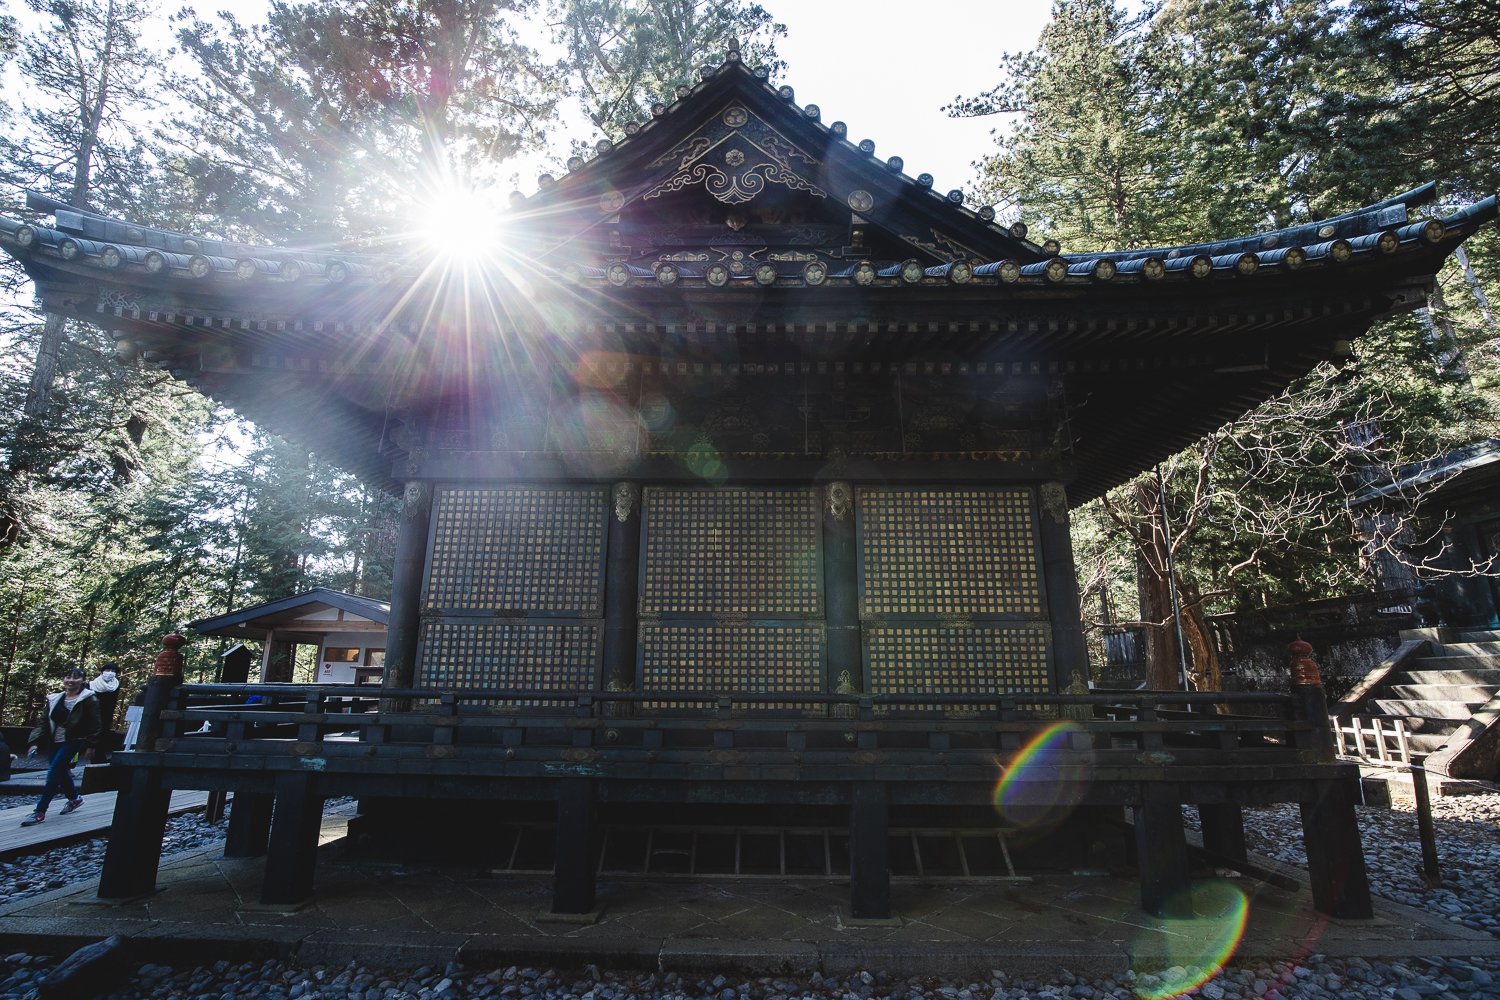 Mausolée du Shogun à Nikko. On voit le bâtiment de bois sombre avec des décorations dorées.